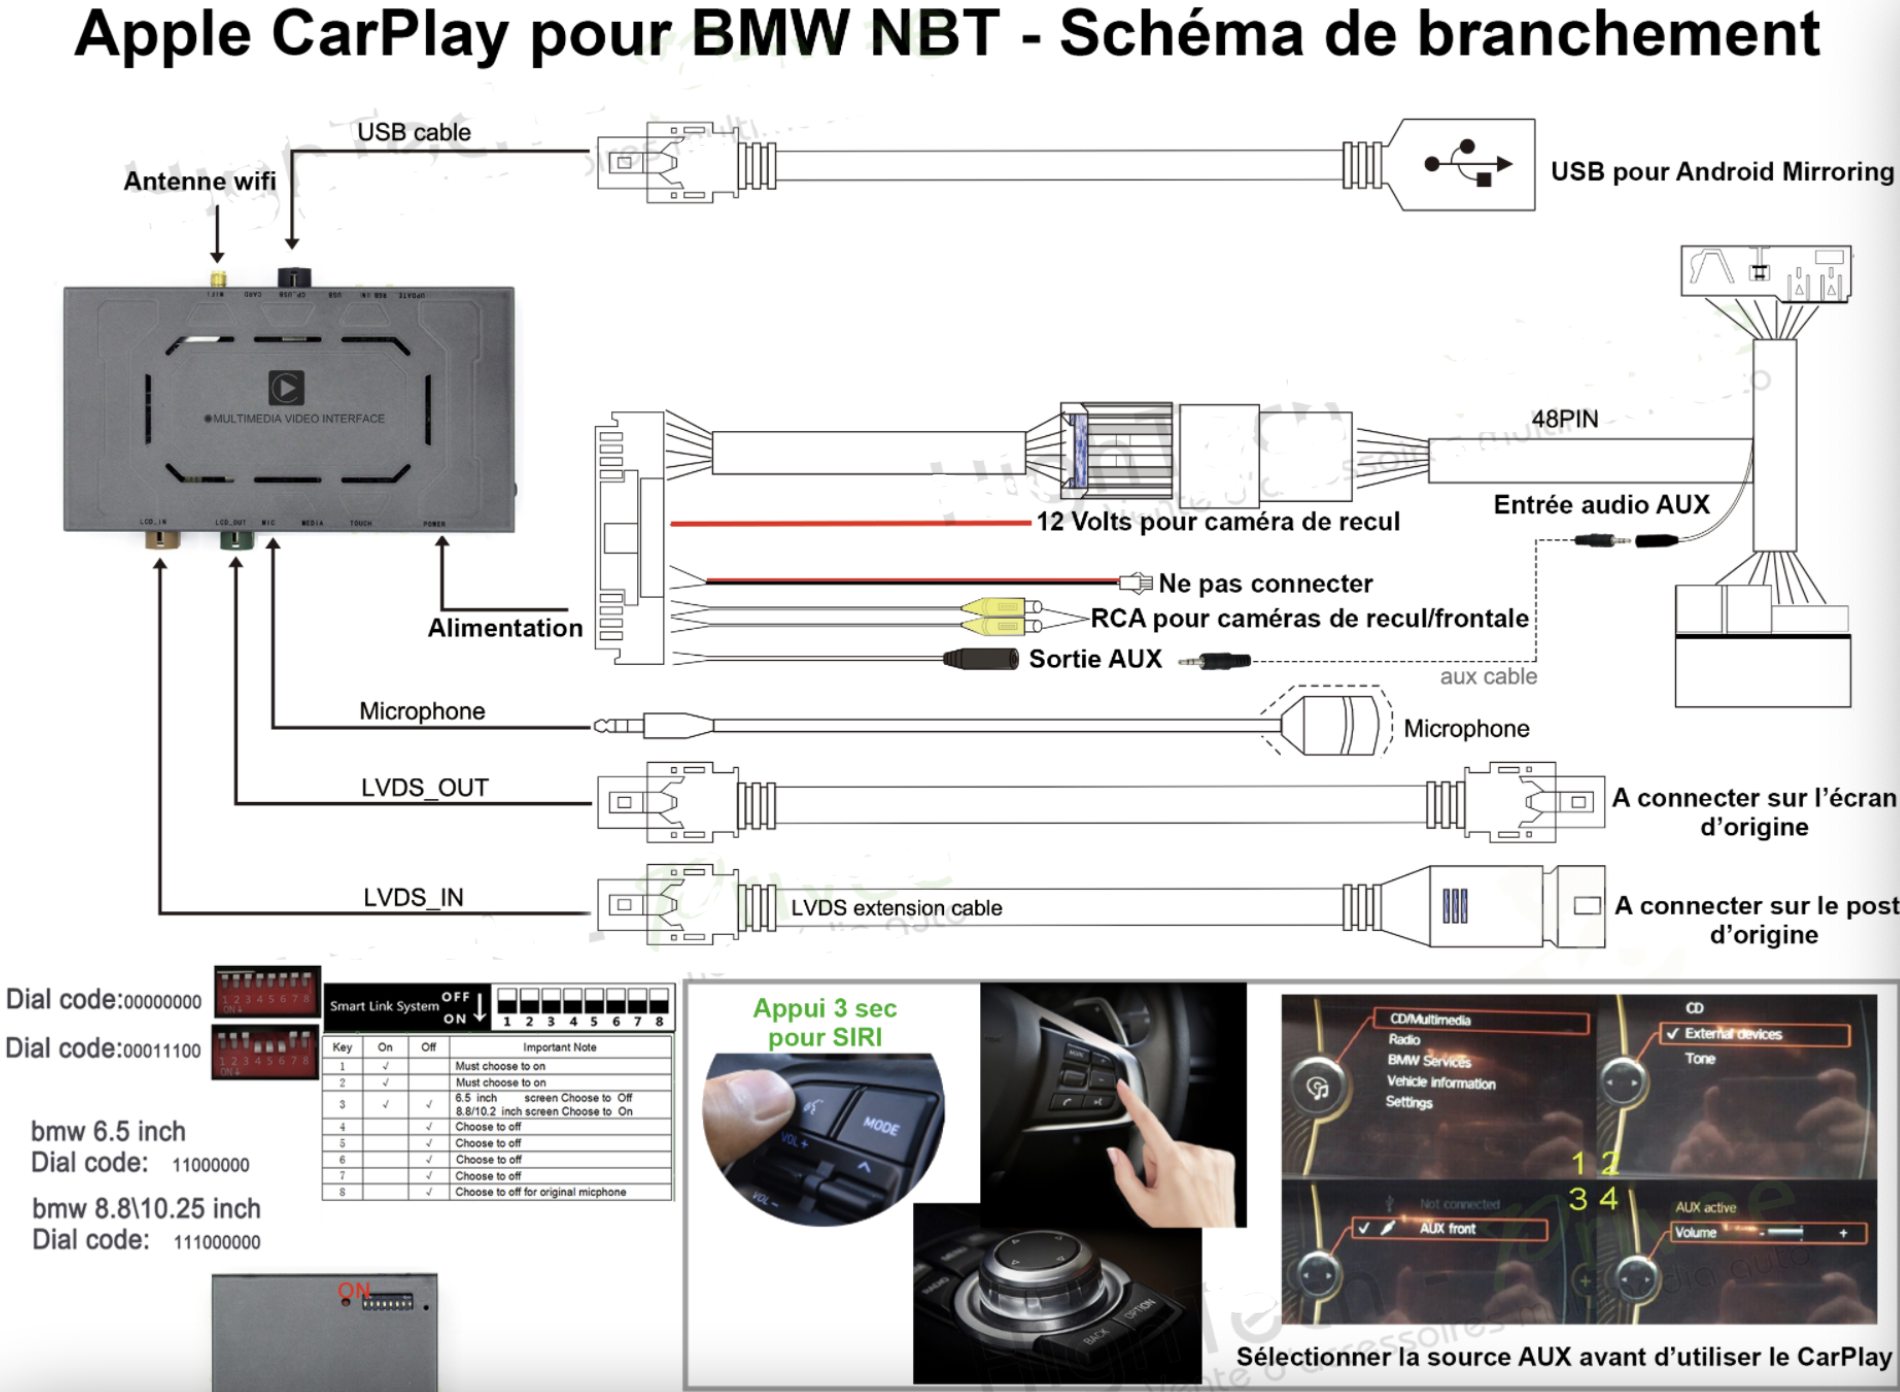 schema branchement apple carplay bmw nbt.png